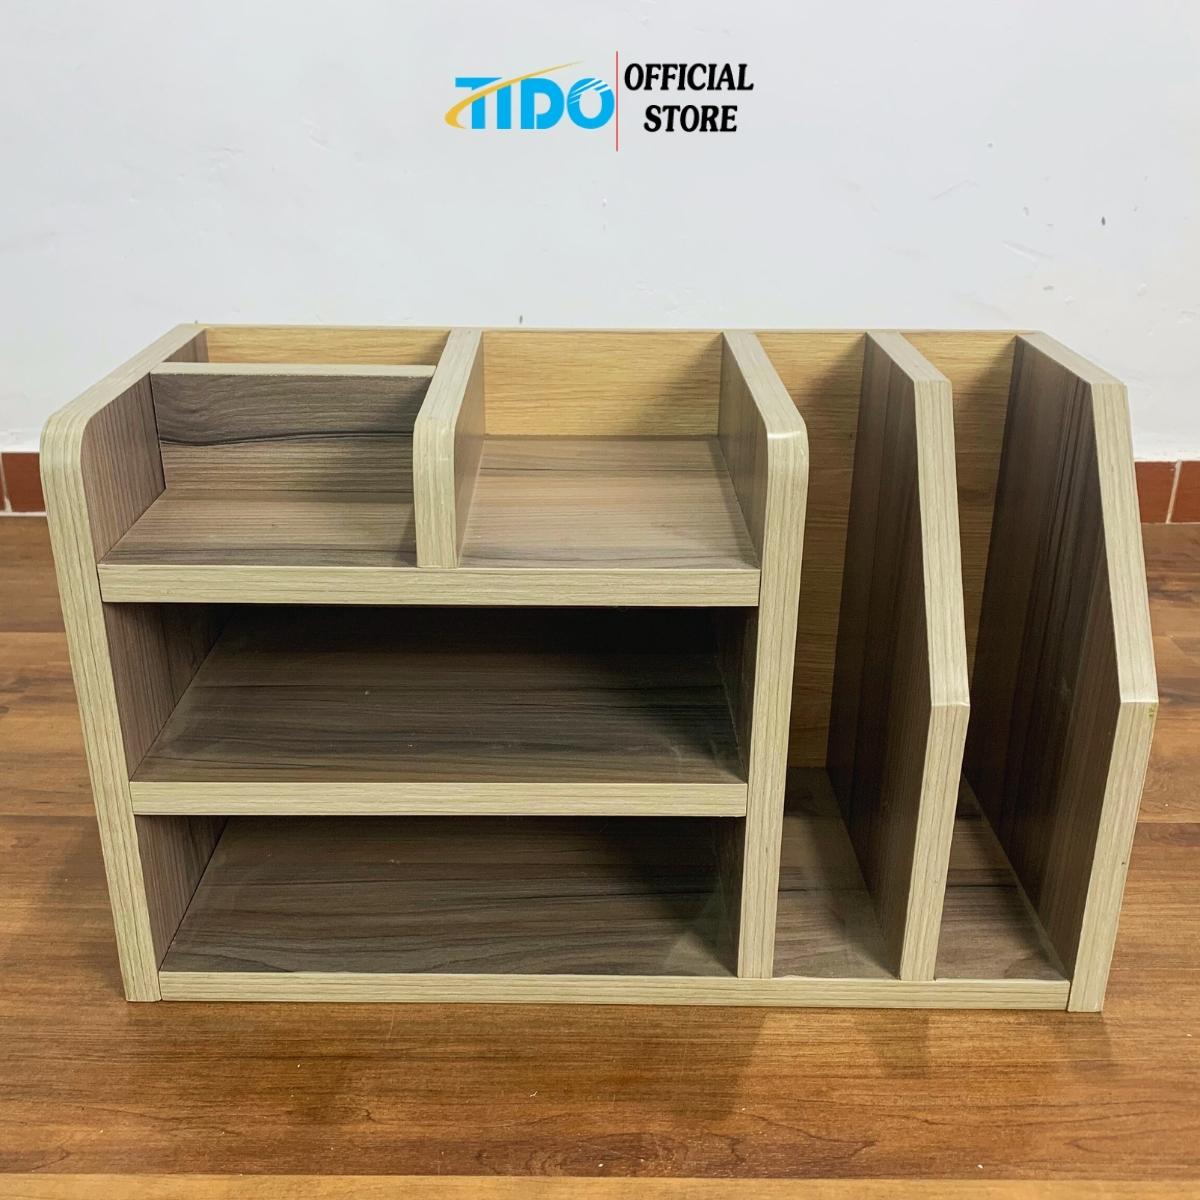 Kệ sách gỗ để bàn TIDO TI-KDHS kệ đựng hồ sơ thiết kế 7 ngăn lắp sẵn tiện lợi